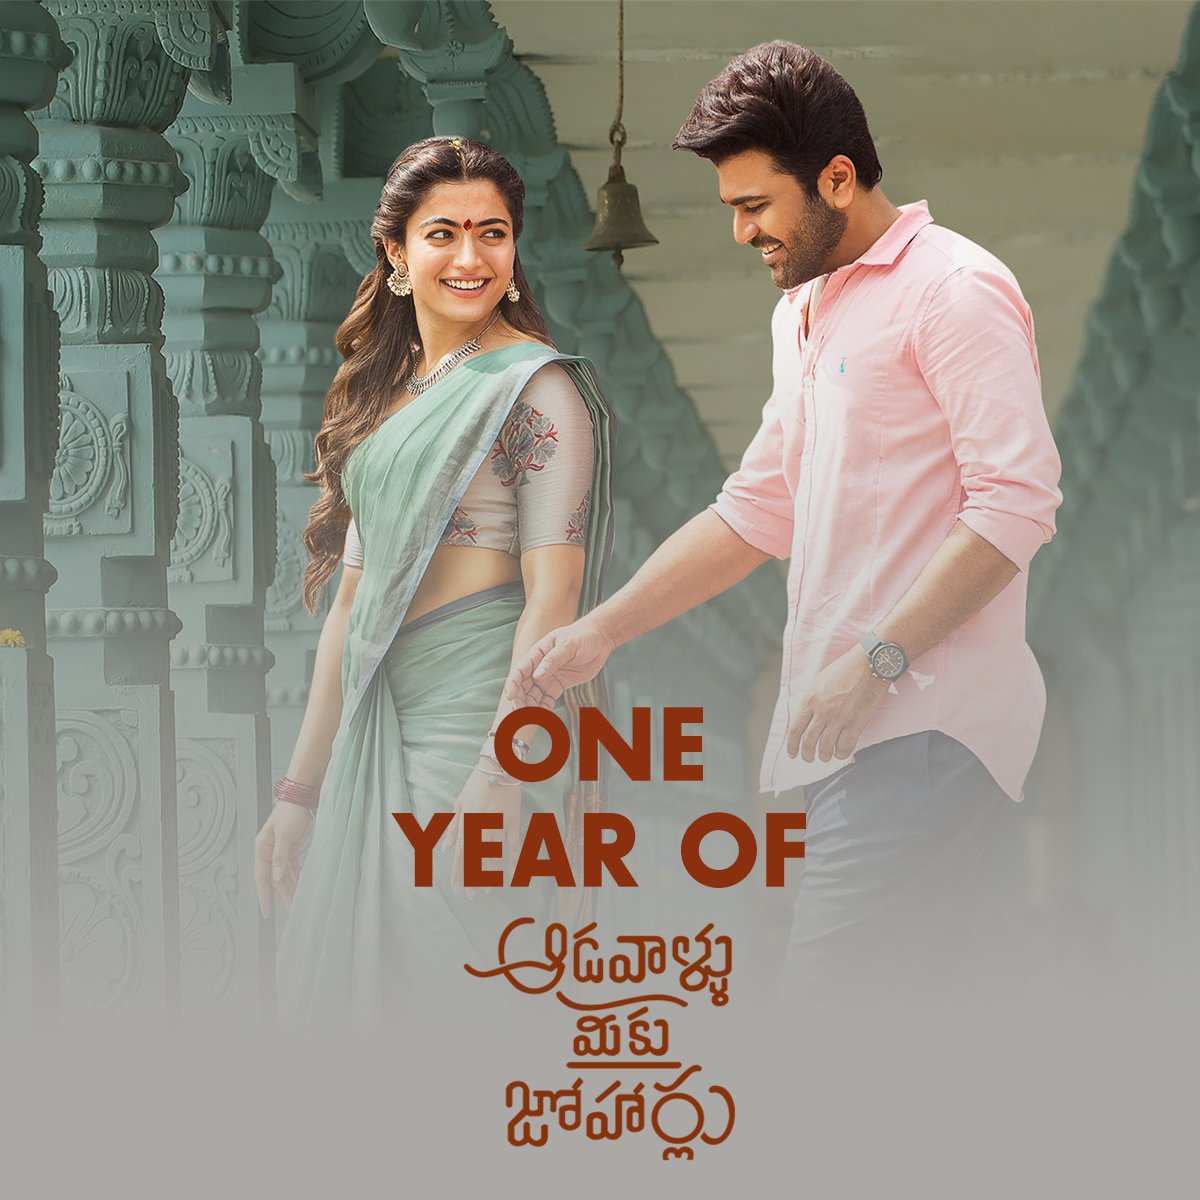 It's 1 year already 💝#AadavalluMeekuJohaarlu completes one year, one year of beautiful #Aadhya ♥️✨

@iamRashmika @ImSharwanand @SLVCinemasOffl @ThisIsDSP

#1YearOfAadavalluMeekuJohaarlu #RashmikaMandanna